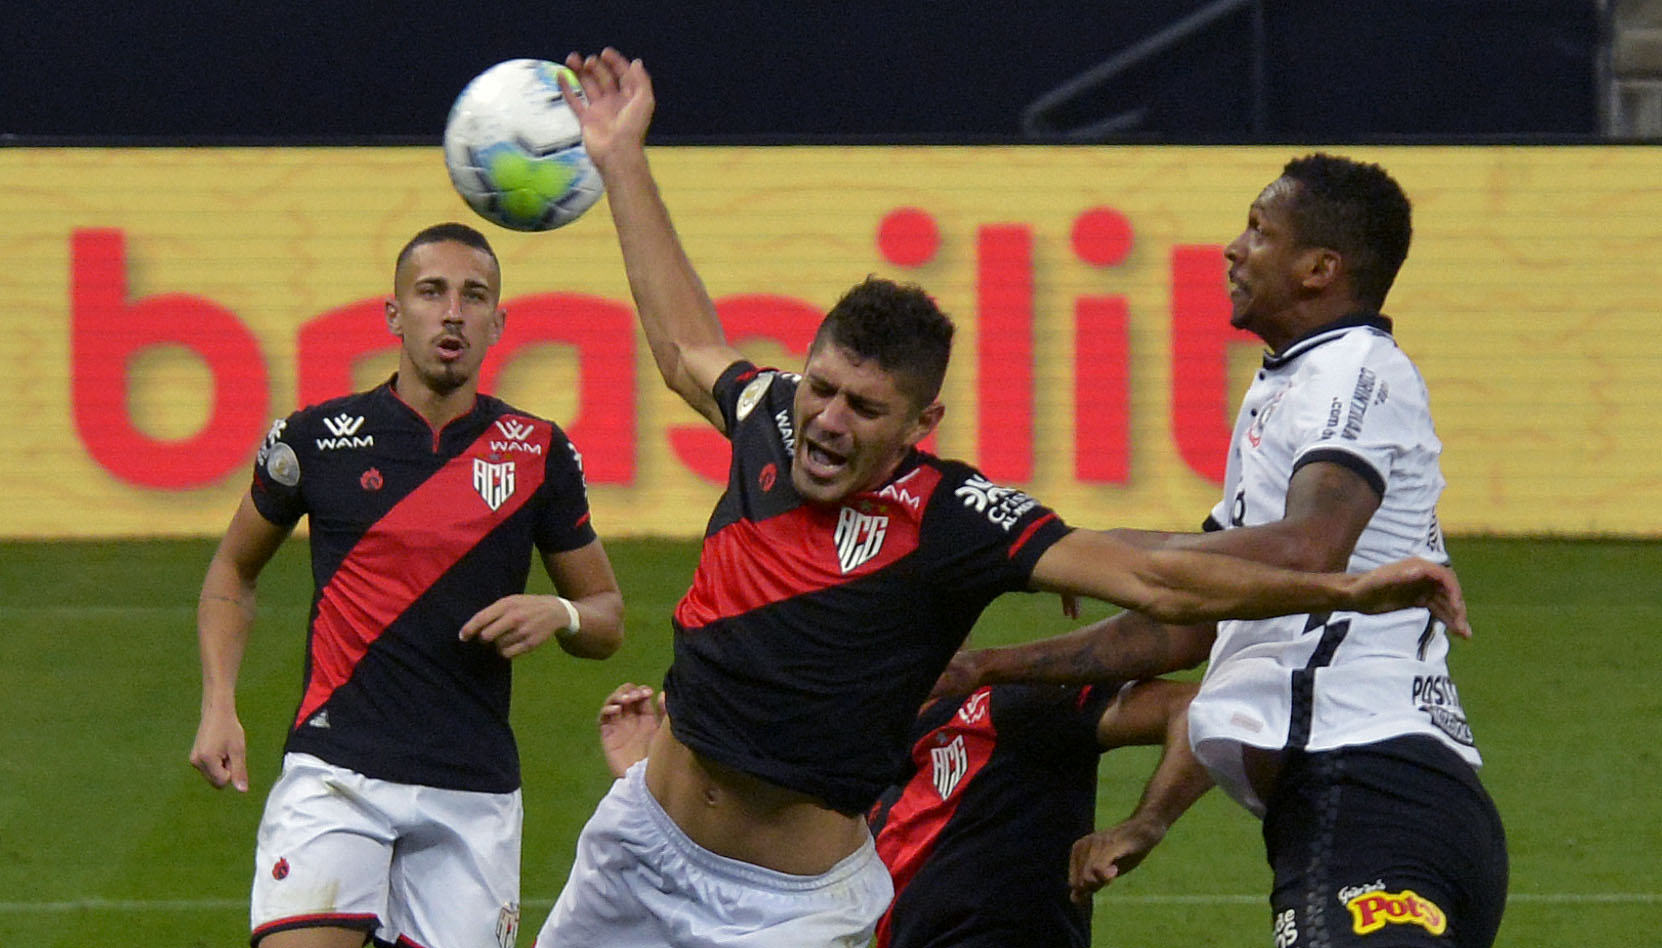 Goianiense vs Sao Paulo – Nhận định kèo bóng đá 05h00 06/06/2021 – VĐQG Brazil